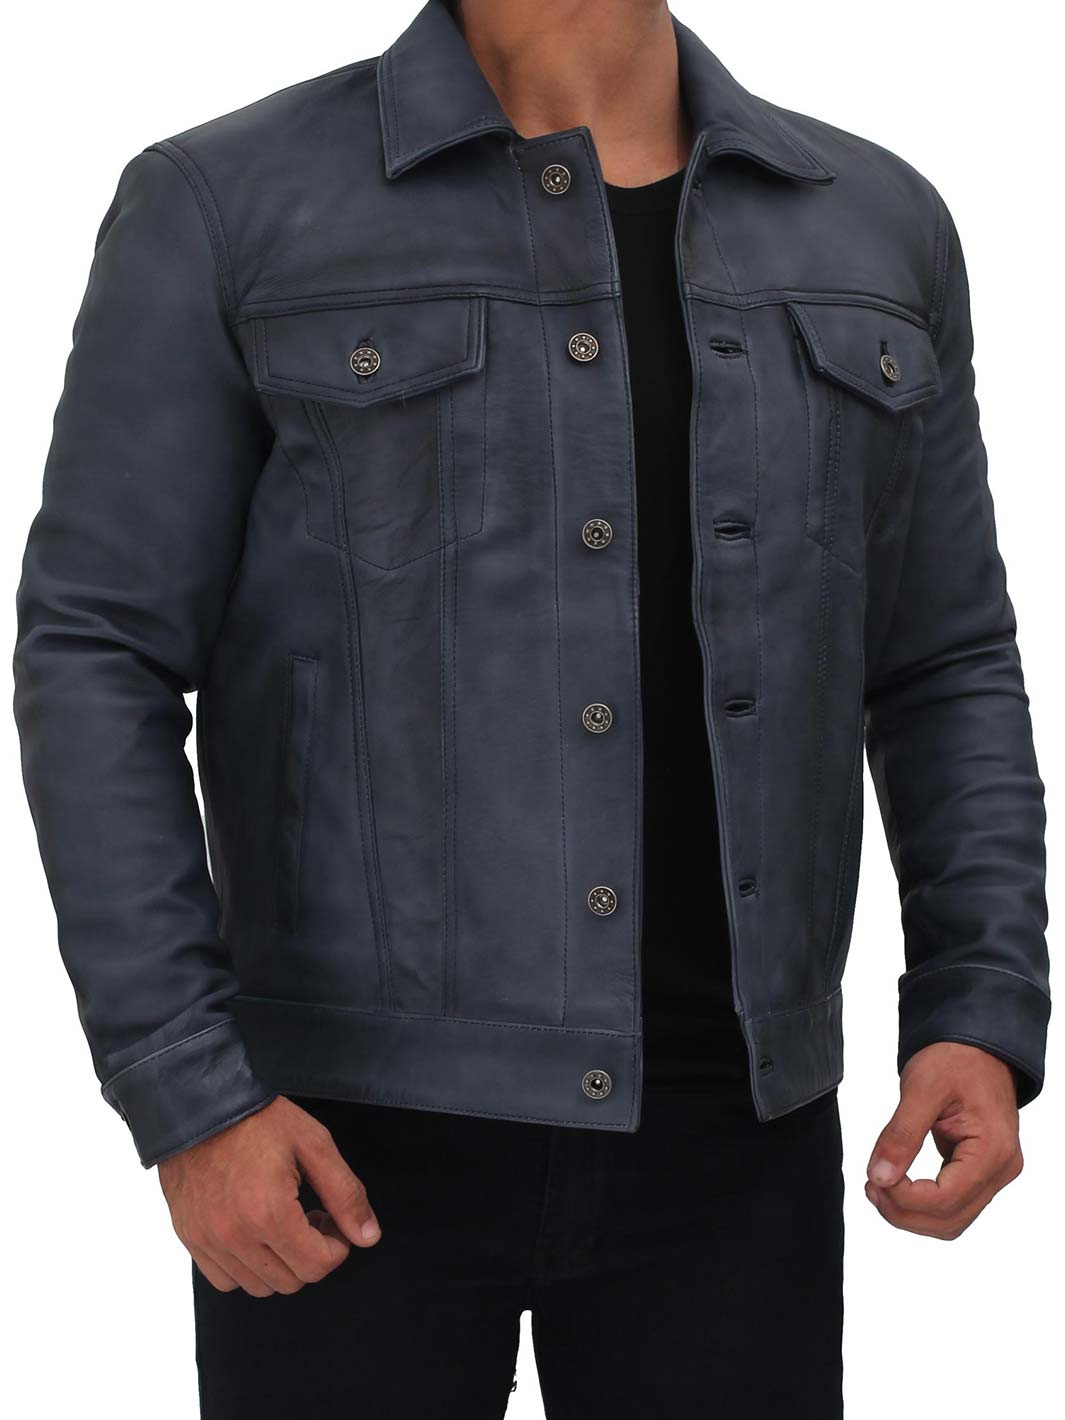 Fernando Men's Black Leather Trucker Jacket